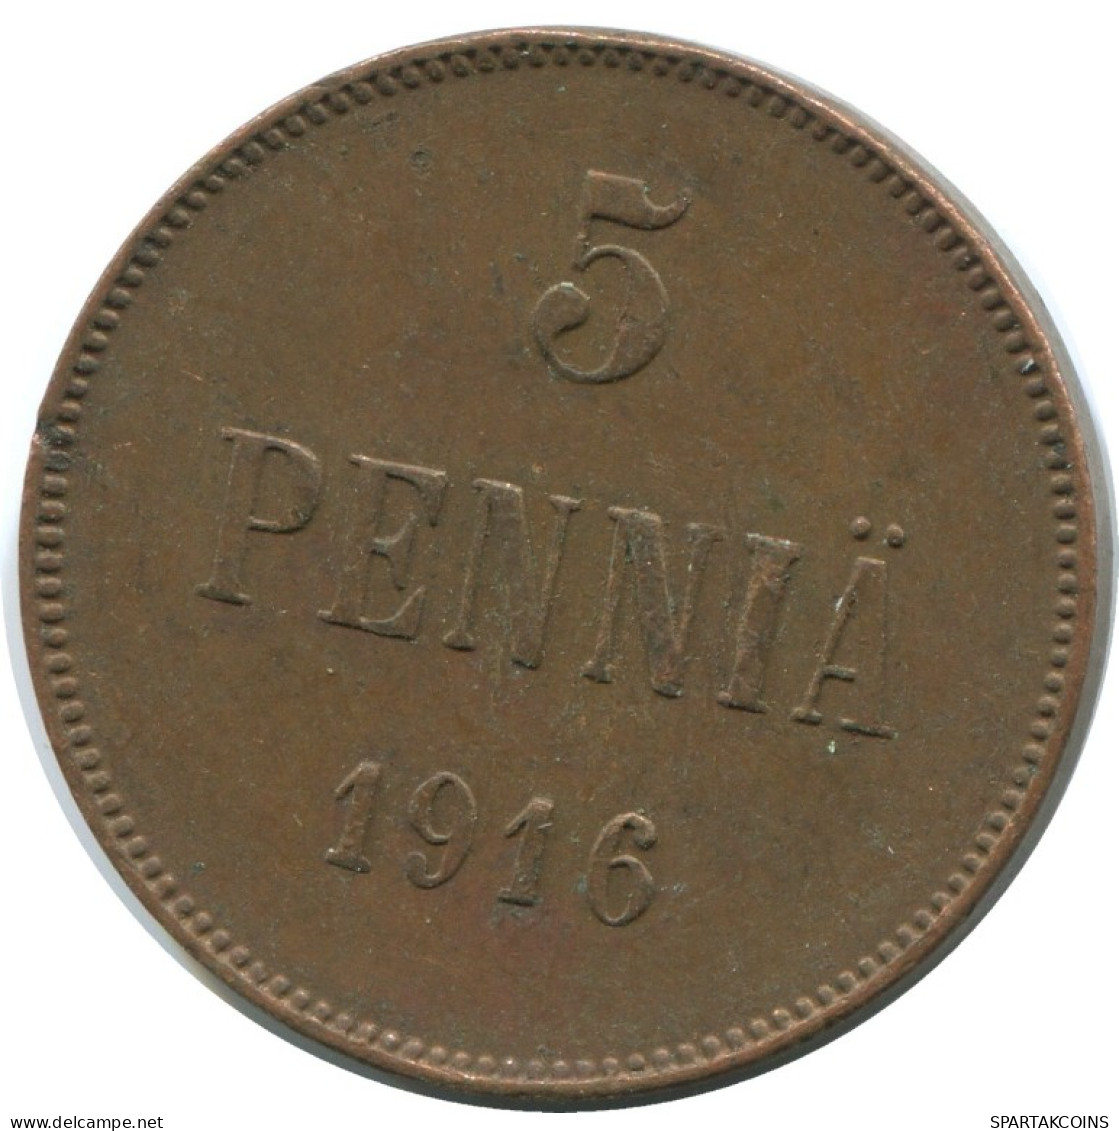 5 PENNIA 1916 FINLAND Coin RUSSIA EMPIRE #AB182.5.U.A - Finlande